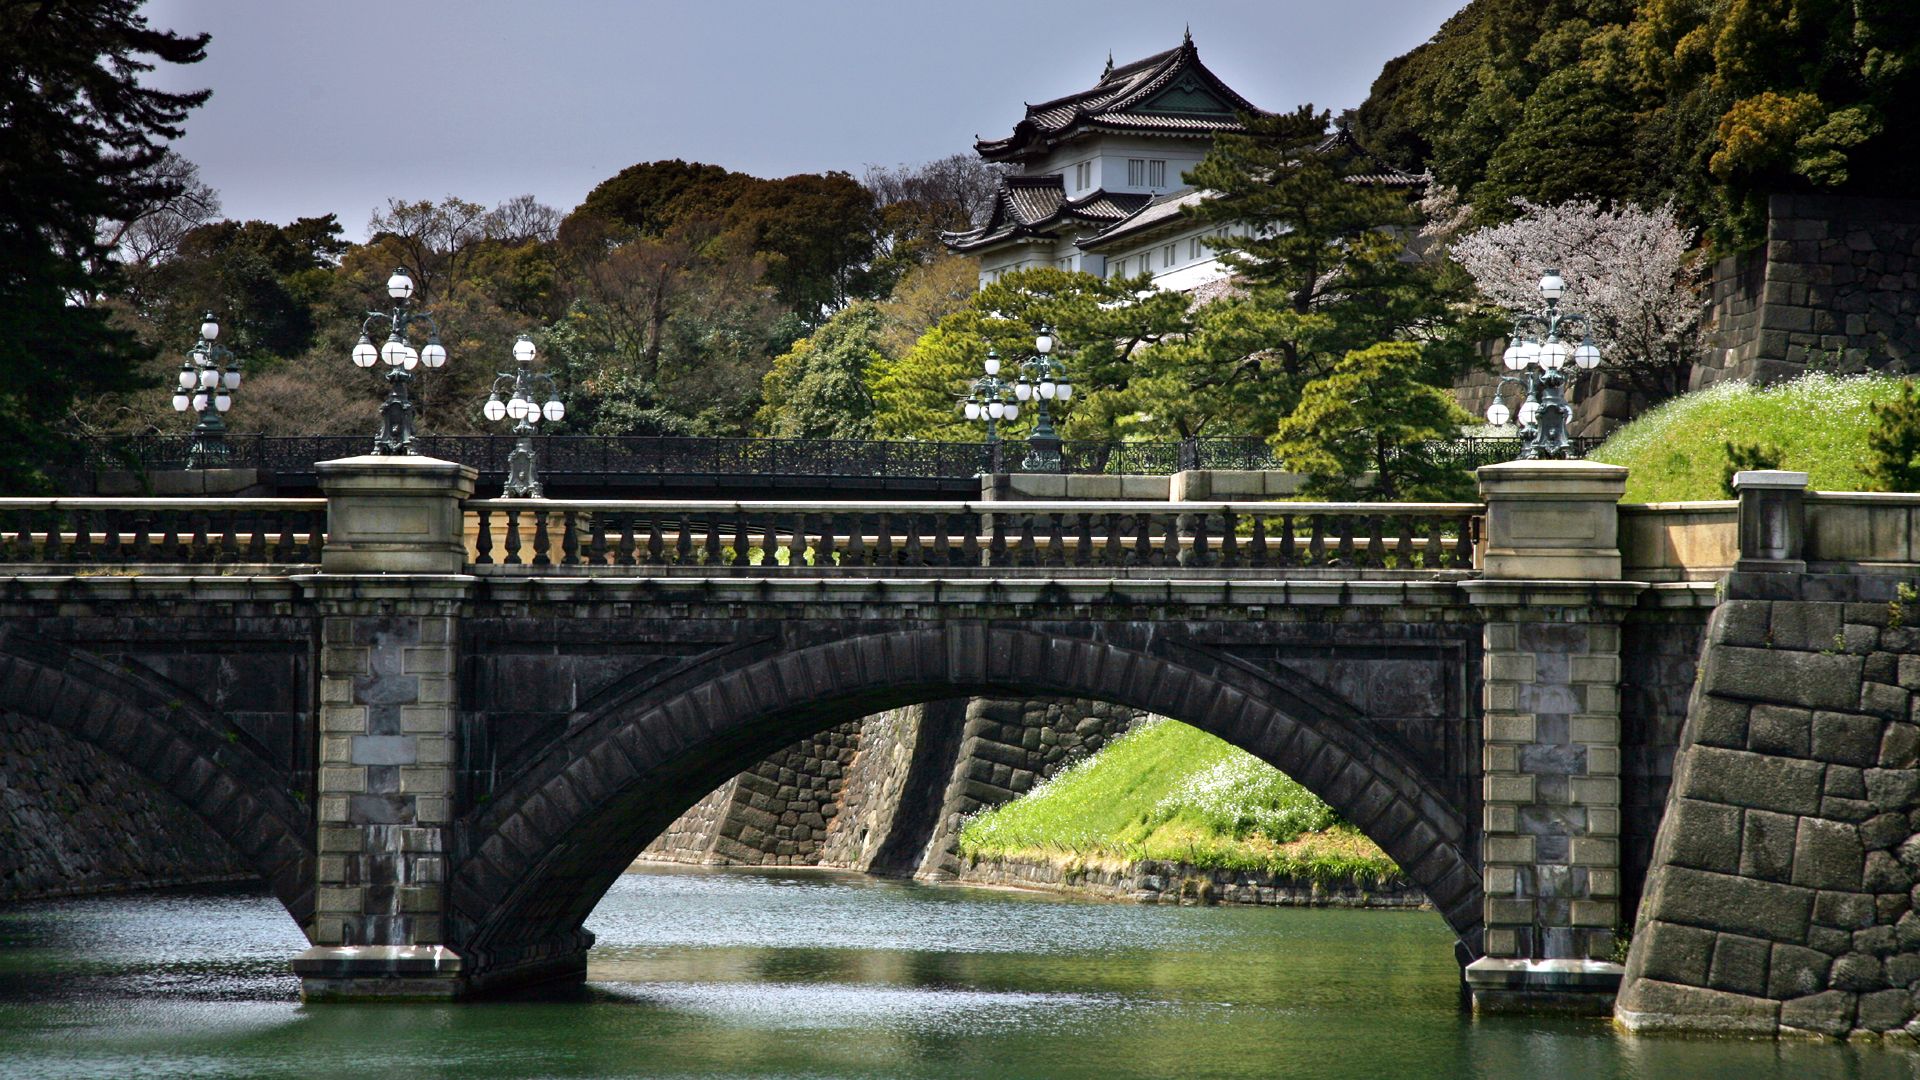 Japan, architecture, bridges - desktop wallpaper